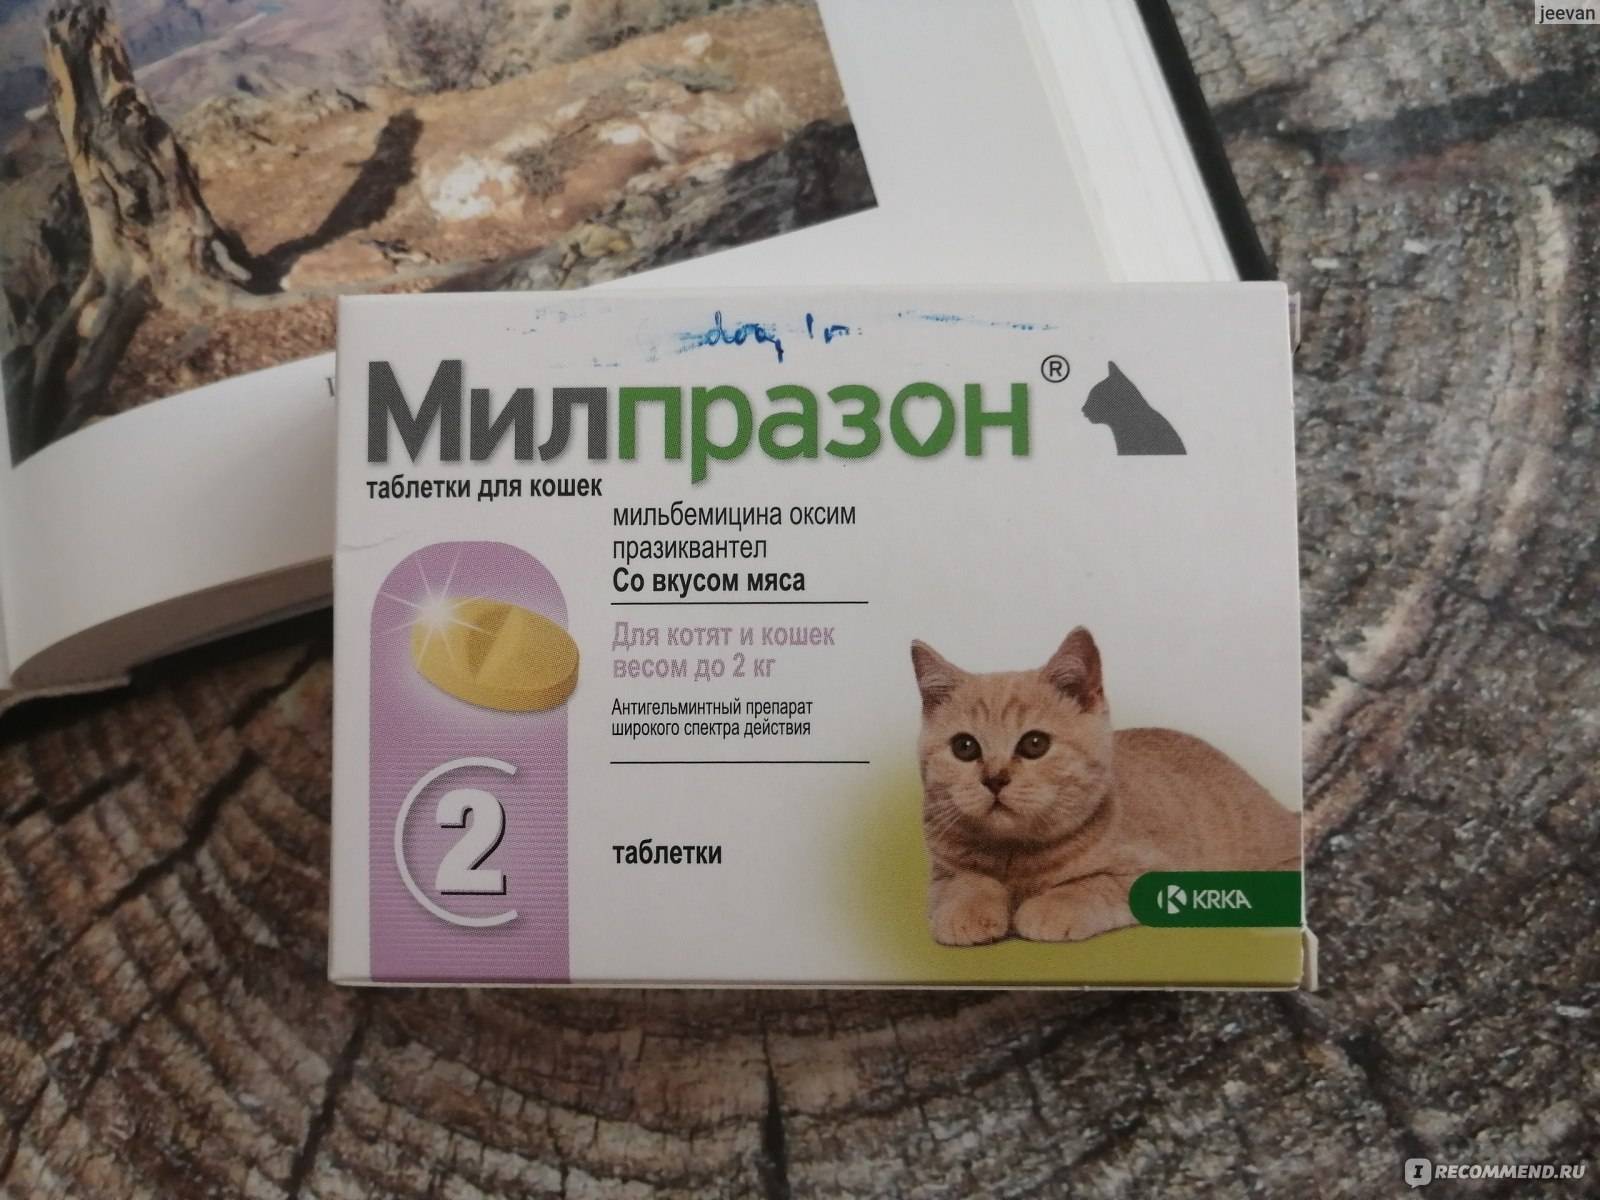 Марена красильная для лечения котов и кошек: инструкция по применению у взрослых животных и котят, отзывы